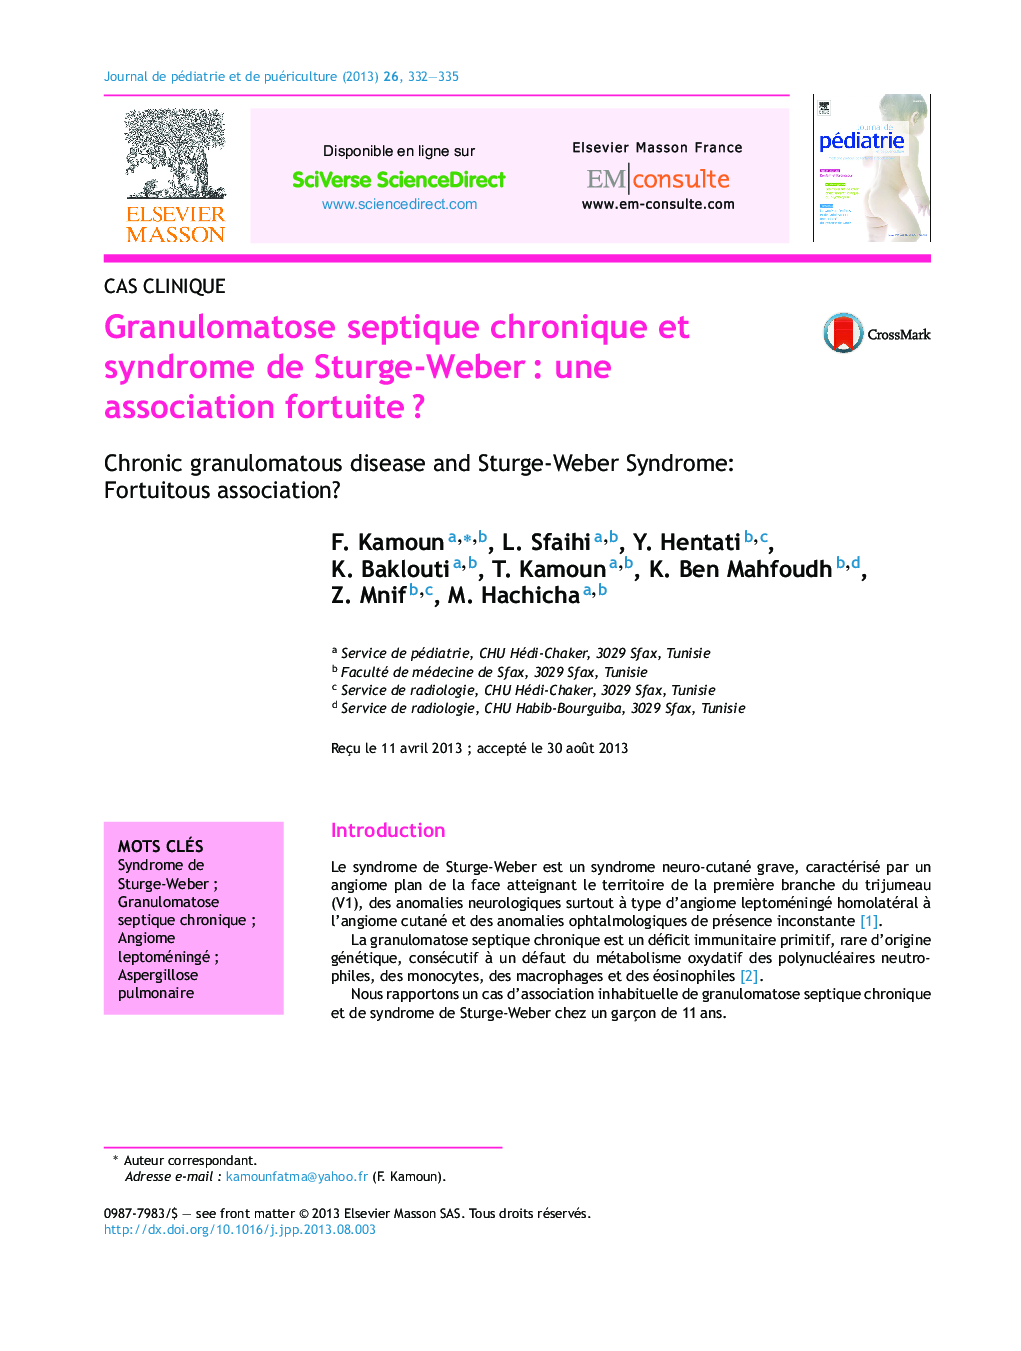 Granulomatose septique chronique et syndrome de Sturge-WeberÂ : une association fortuiteÂ ?